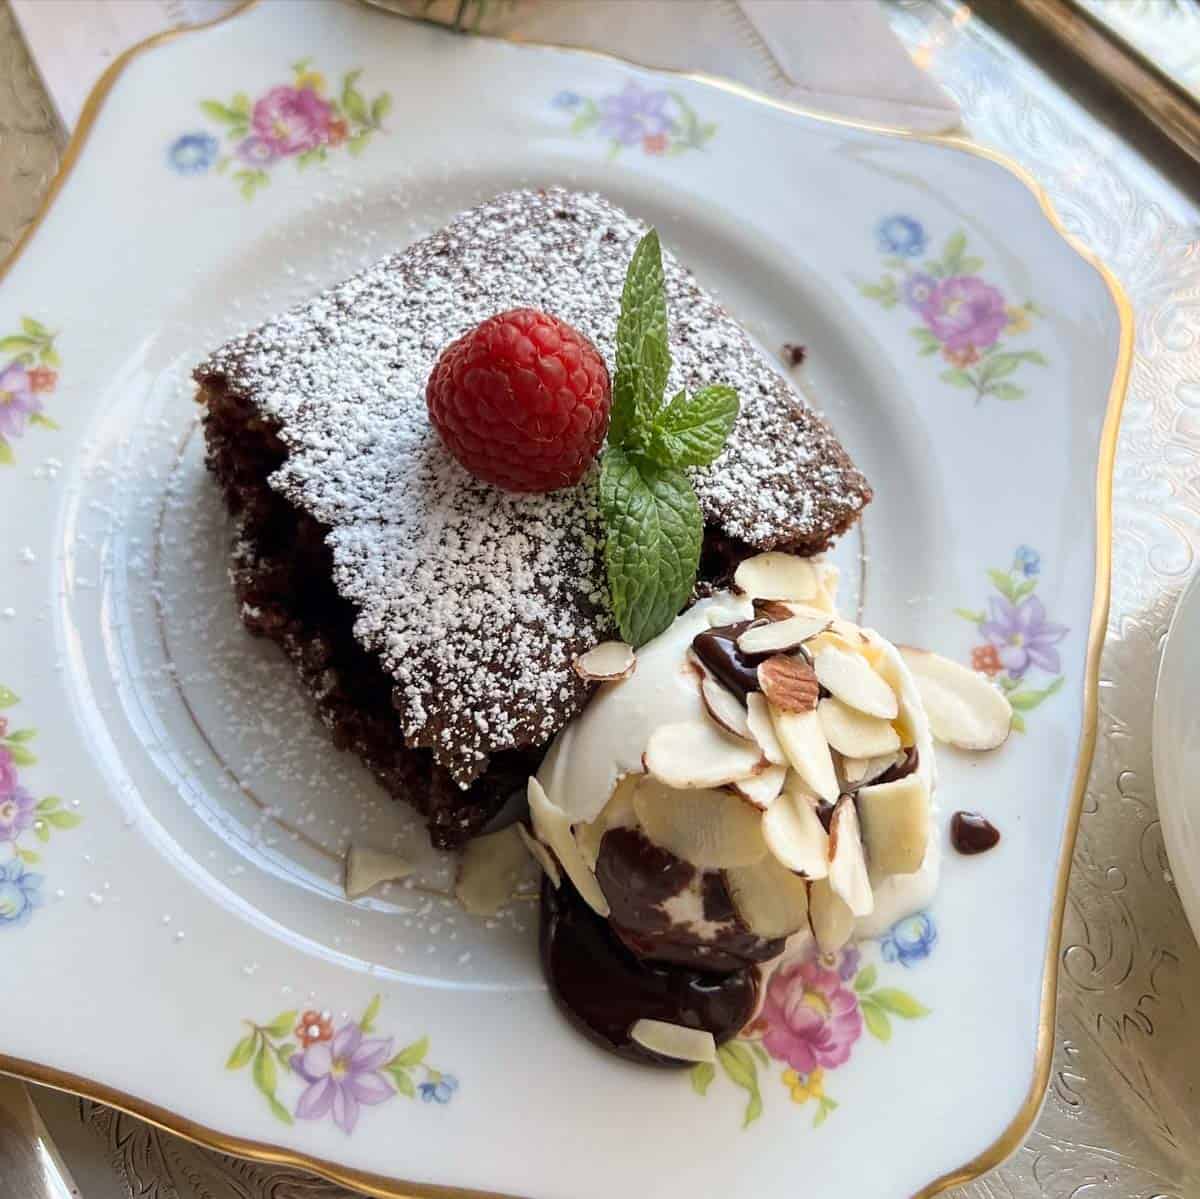 Chocolate Wacky Cake on a plate